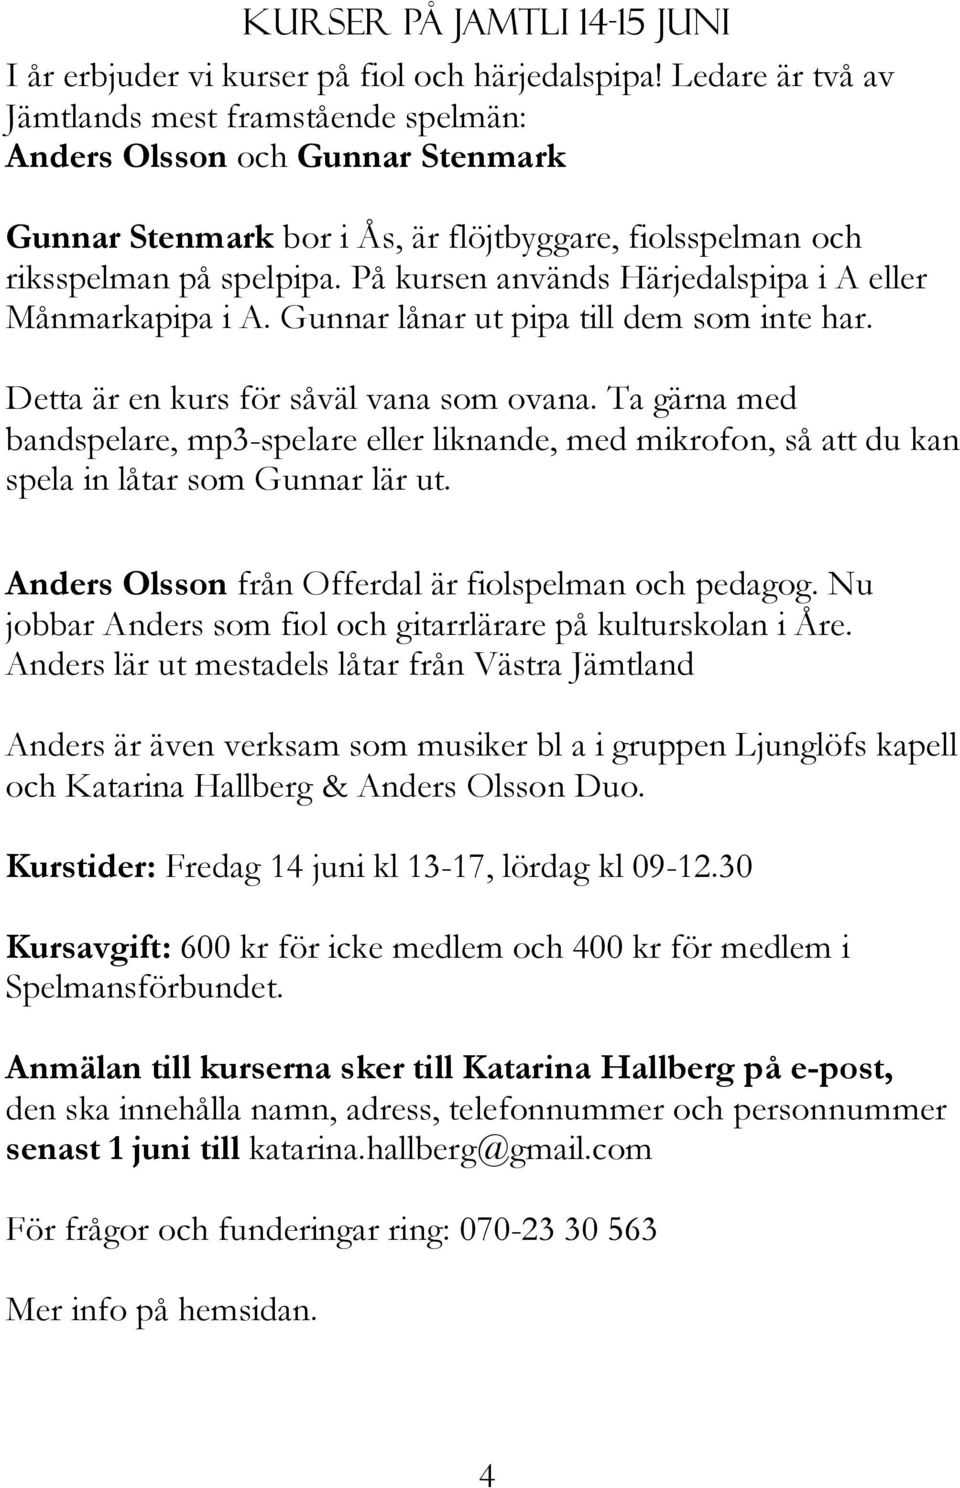 På kursen används Härjedalspipa i A eller Månmarkapipa i A. Gunnar lånar ut pipa till dem som inte har. Detta är en kurs för såväl vana som ovana.